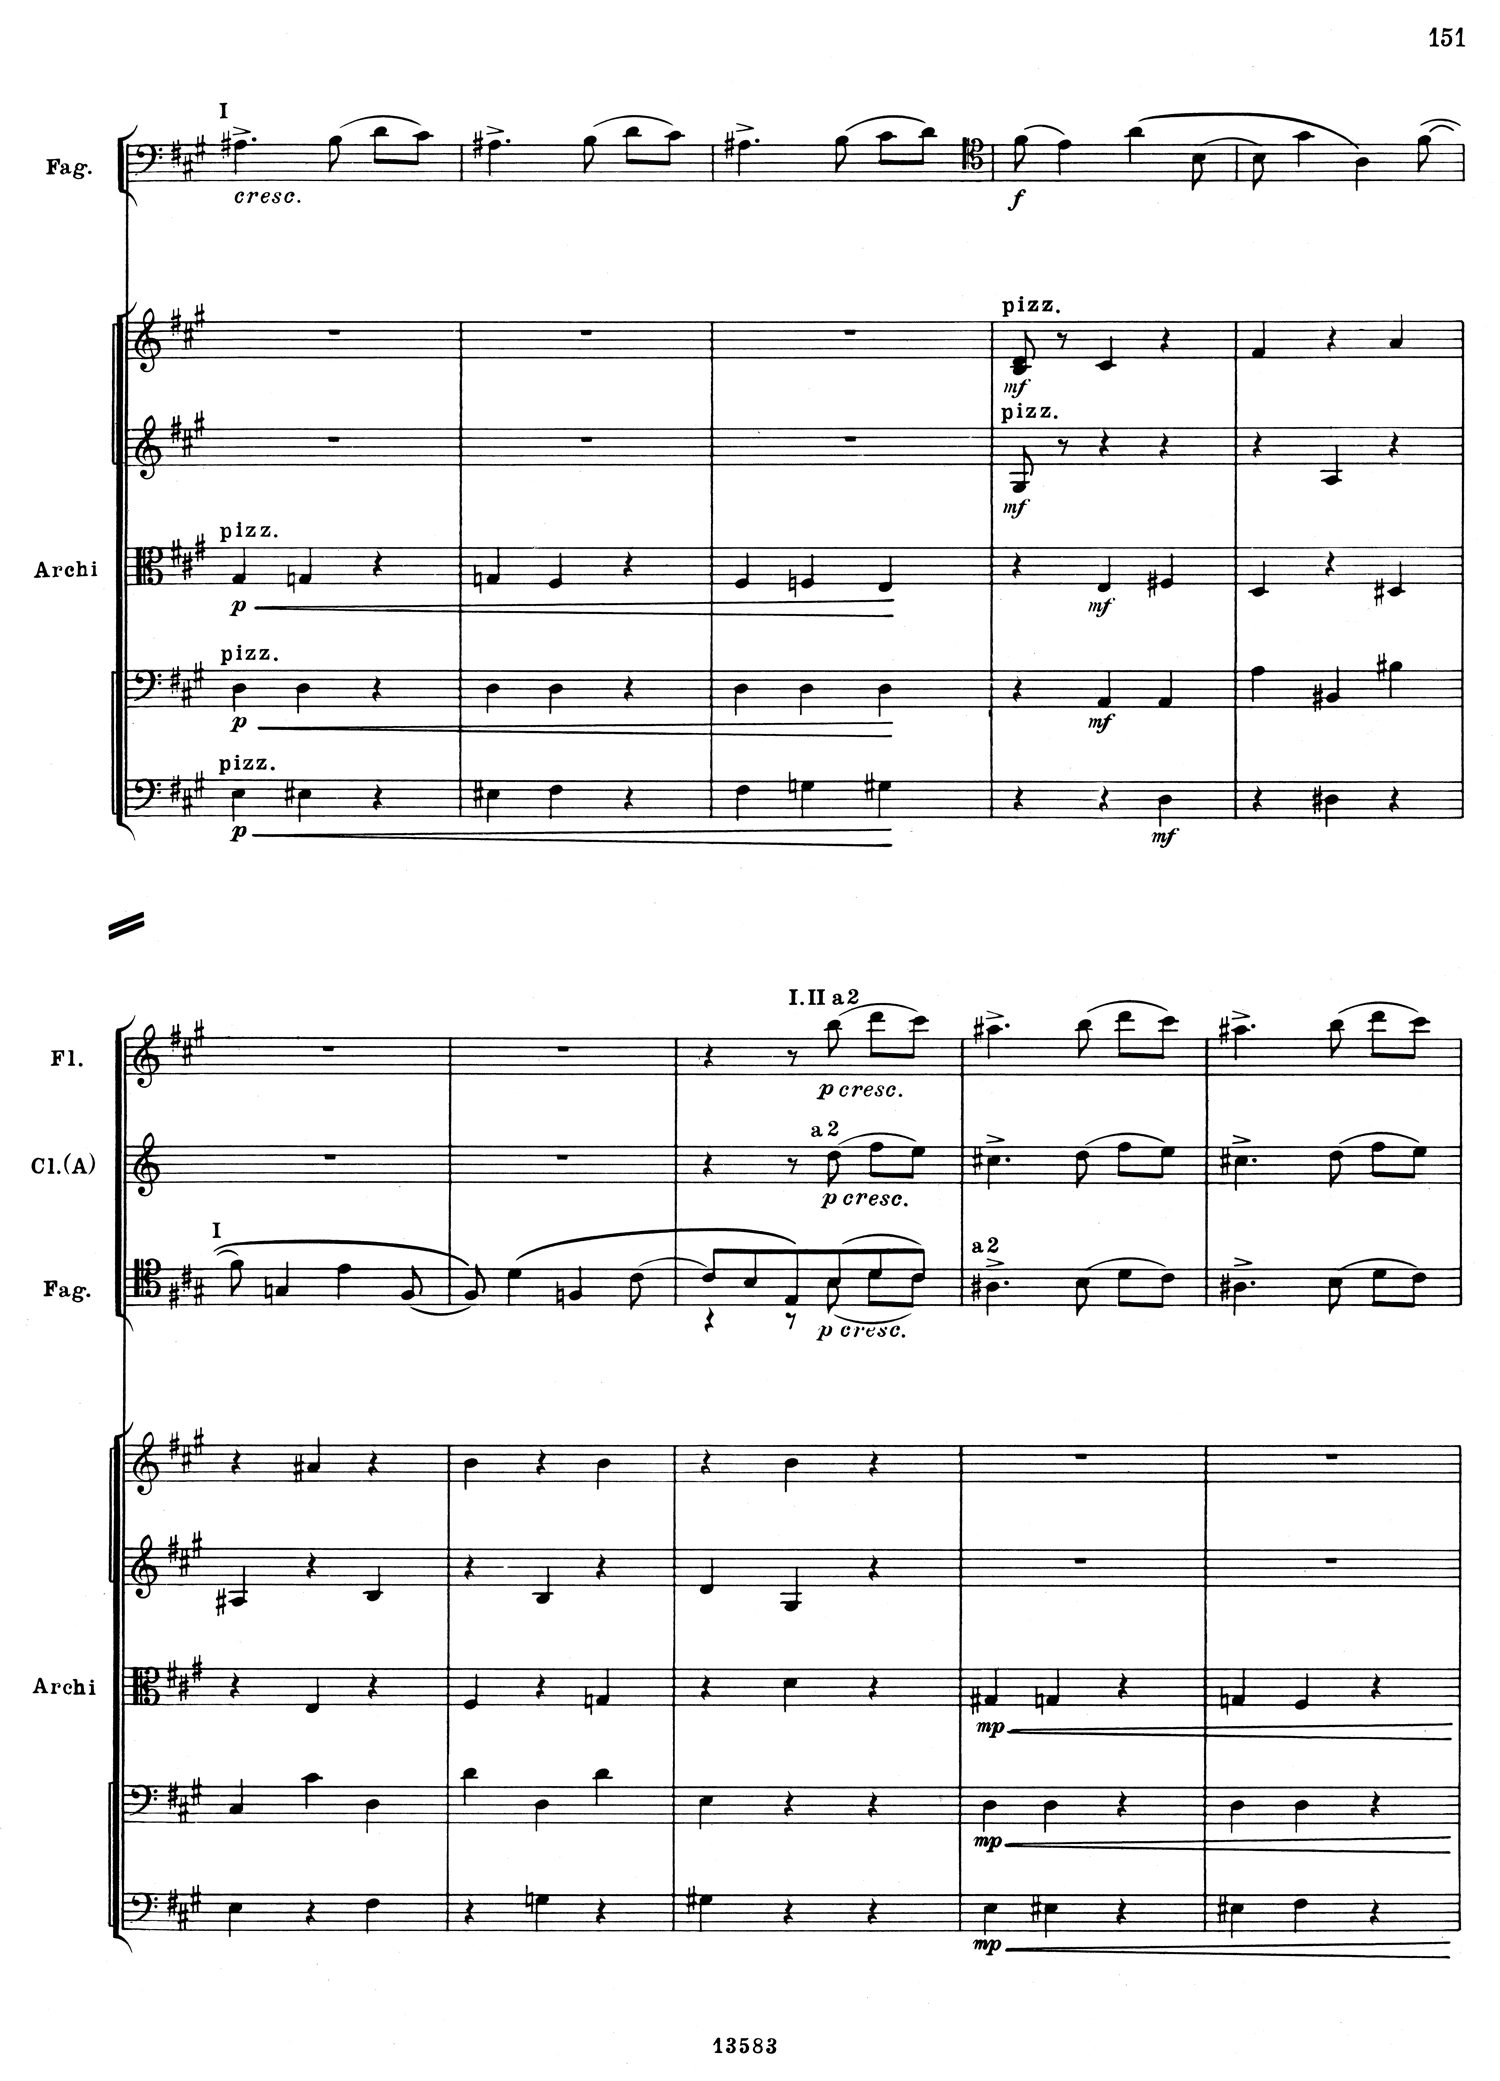 Tchaikovsky 5 Mvt 3 Score 6.jpg